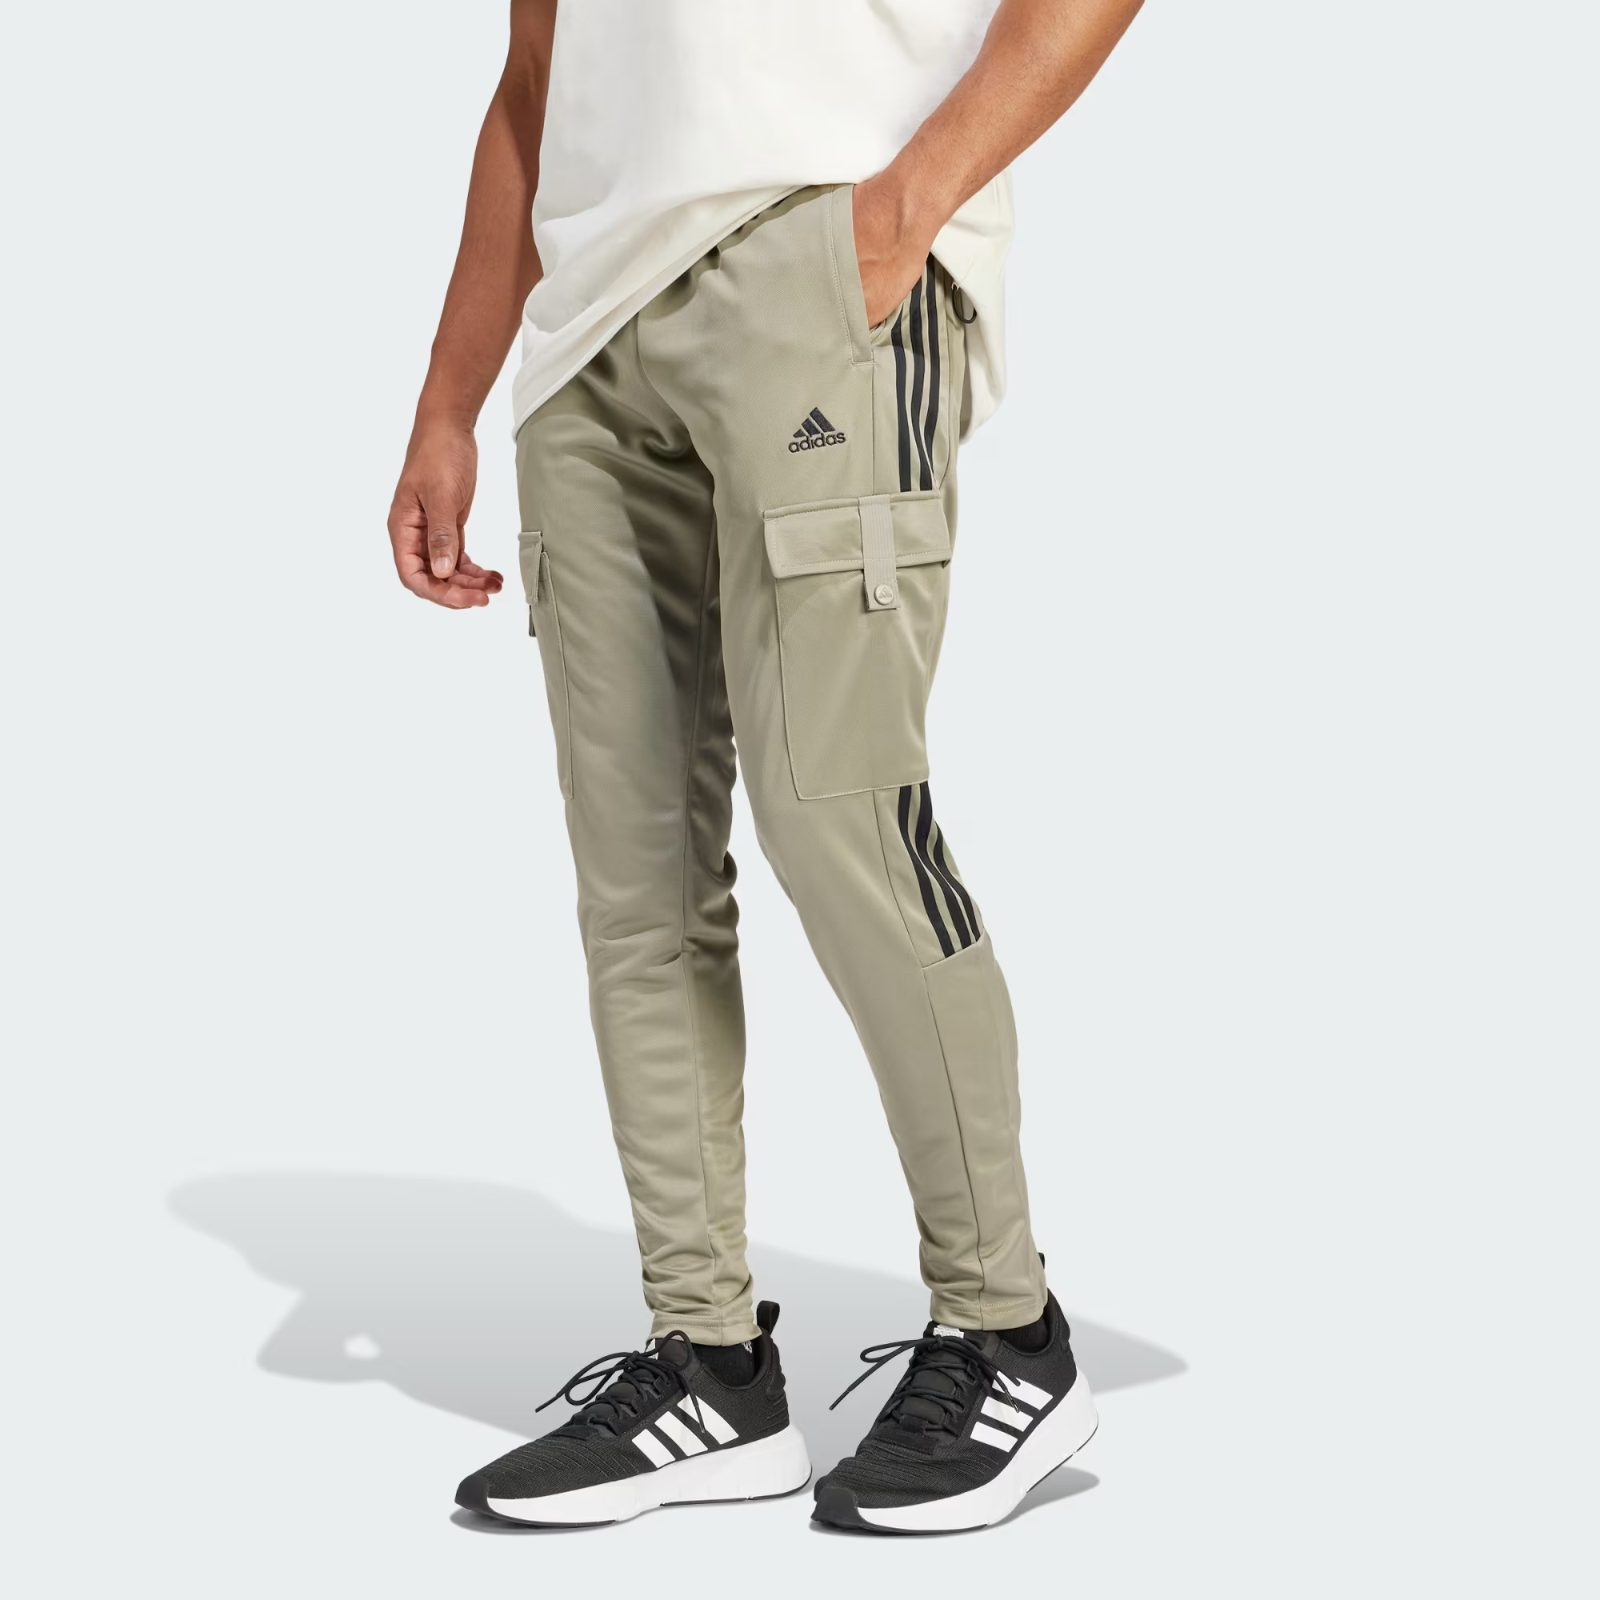 Adidas and Cargo items Comfort Pantaloni Uomo Tiro similar 50